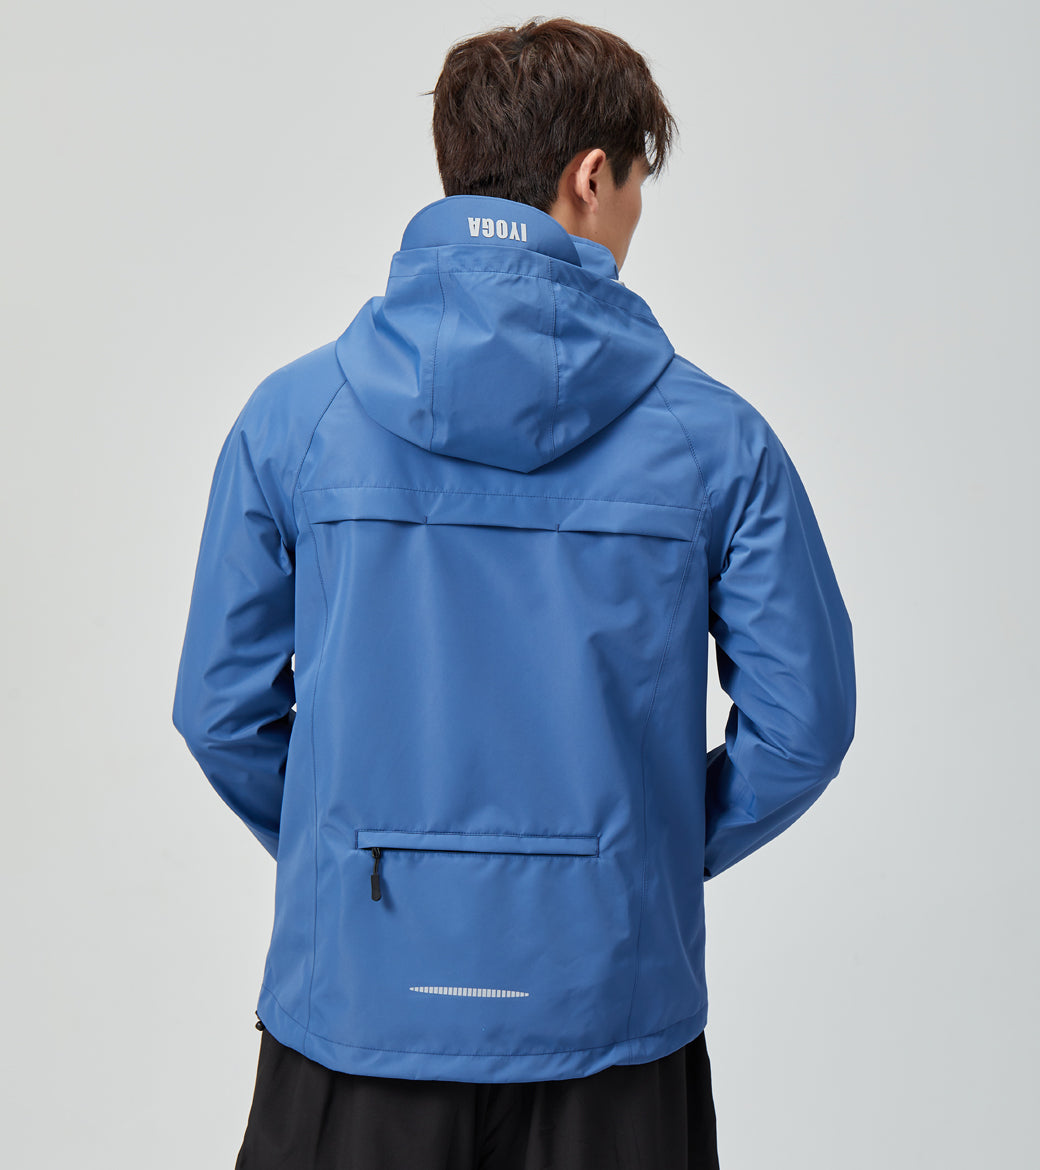 LOVESOFT Men's Blue Outdoor Jacket Waterproof Windproof Warm Jacket